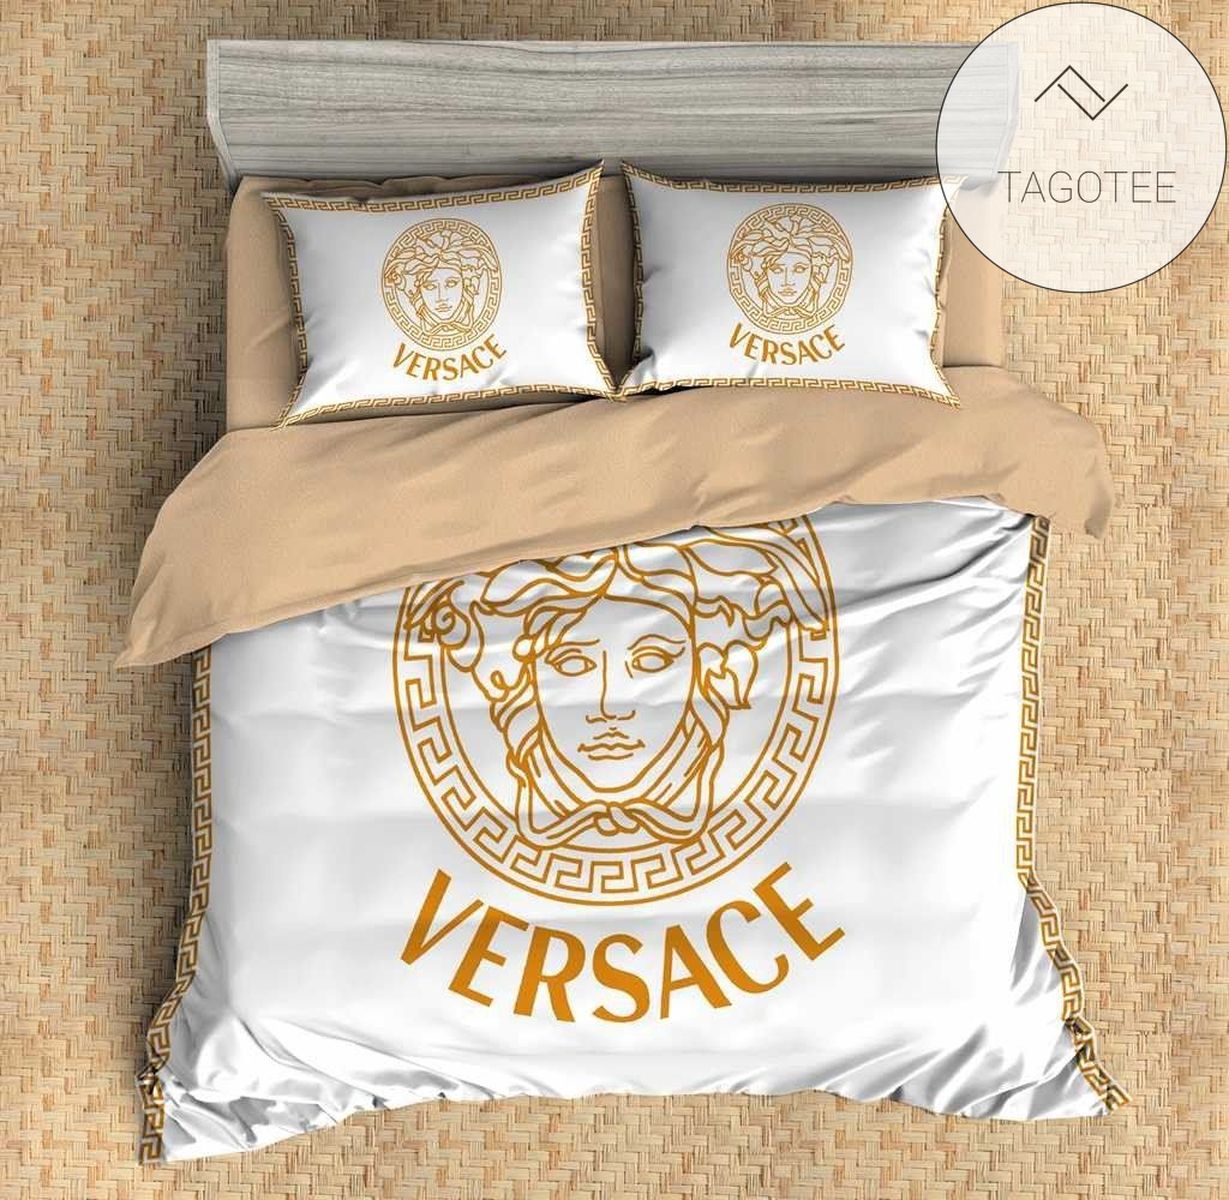 Versace Custom 7 Duvet Cover Bedding Set (Duvet Cover & Pillowcases) 2022